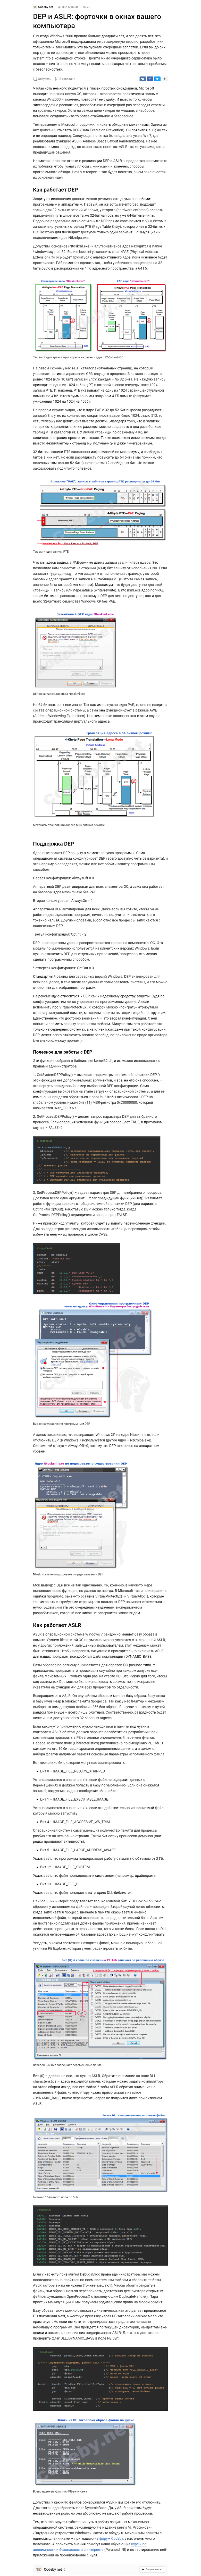 Пример статьи It-тематики для сайта vc.ru